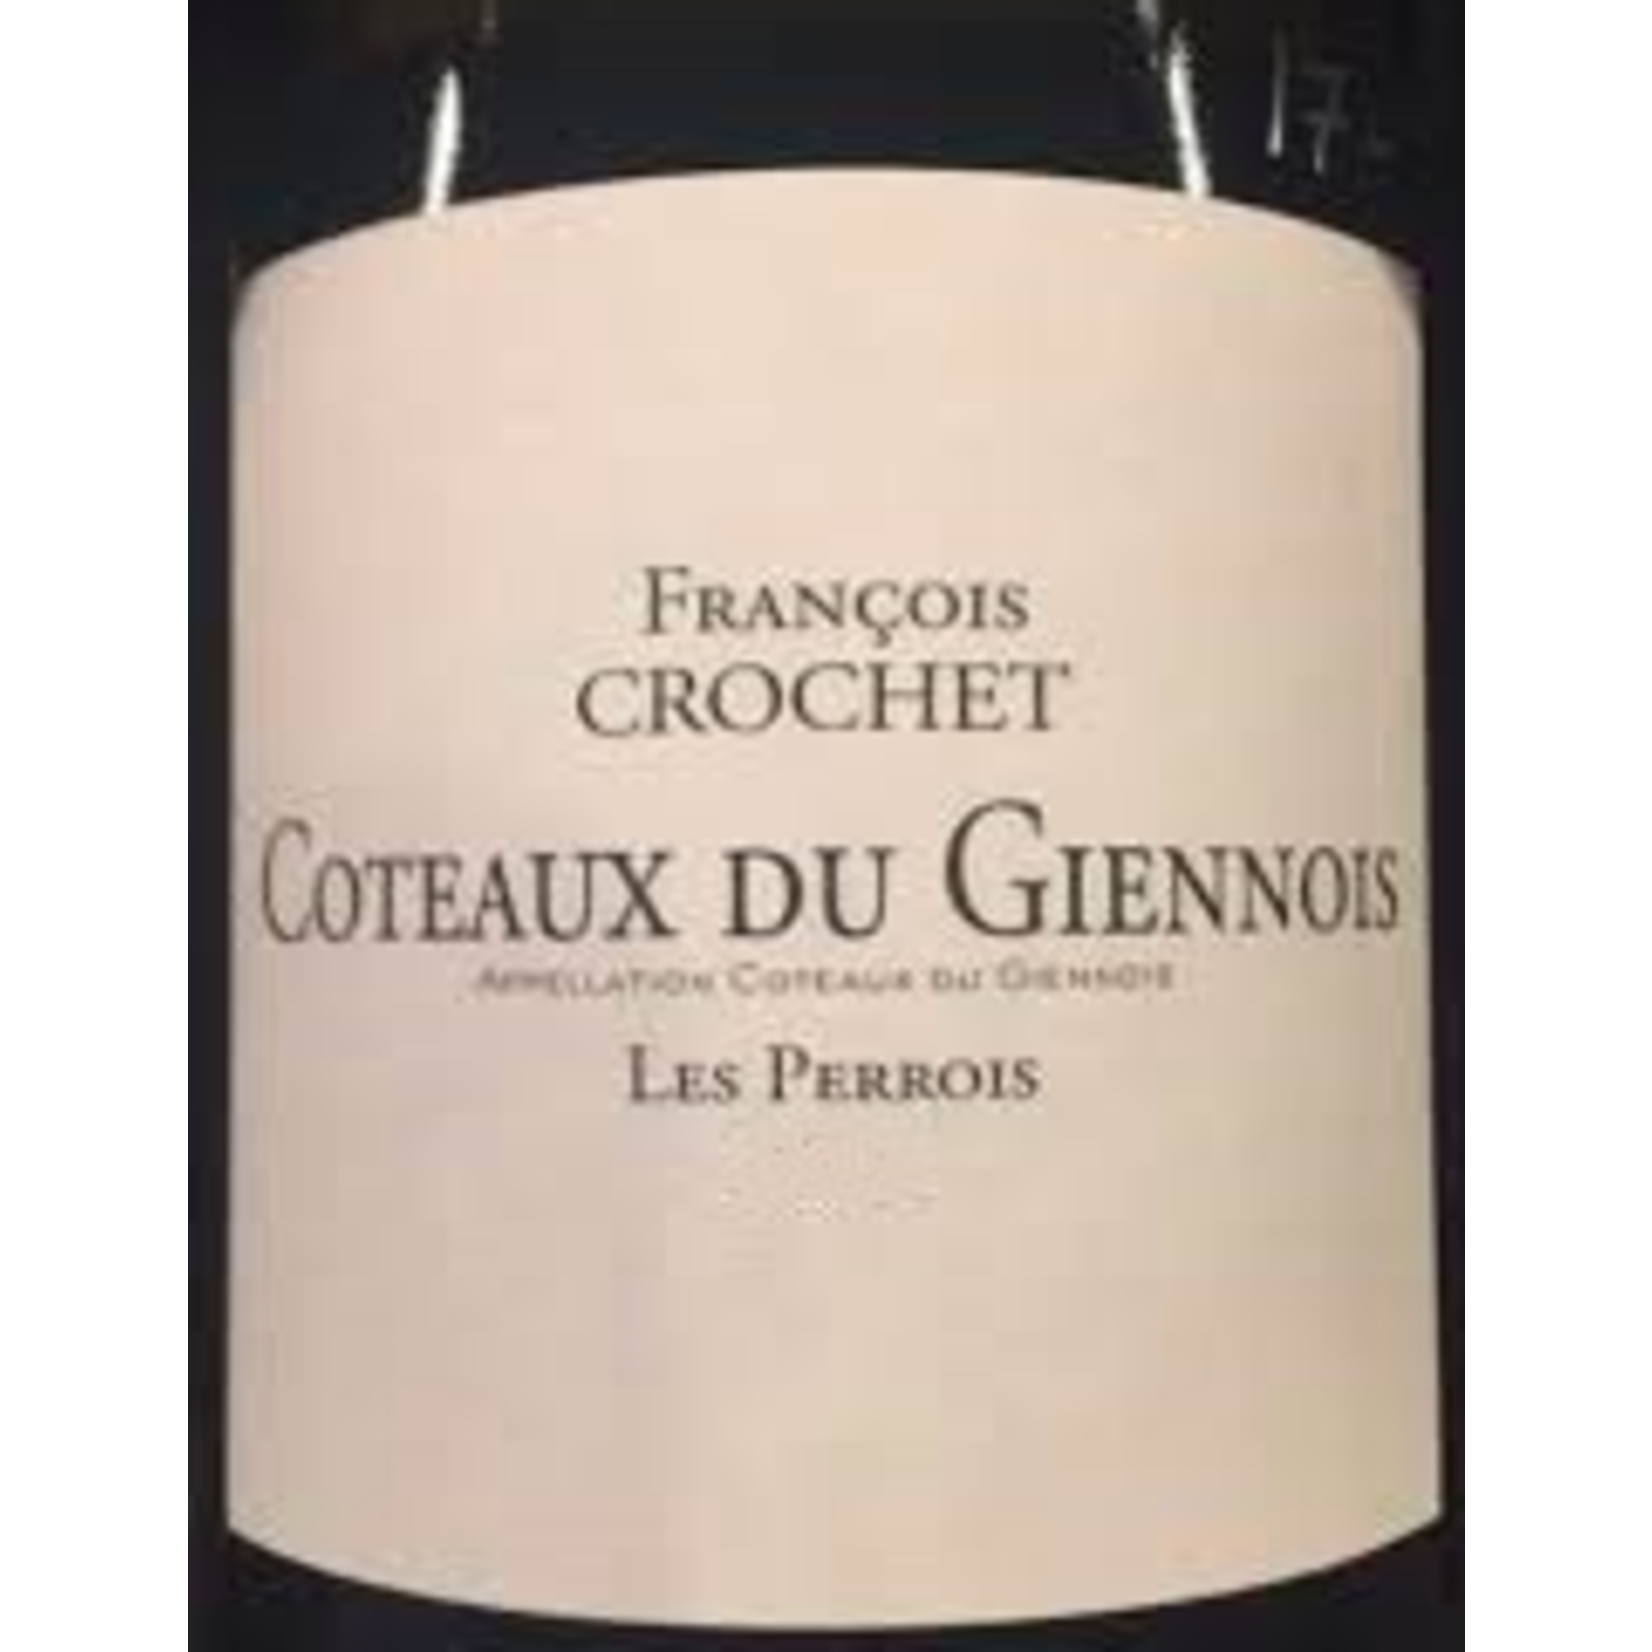 Francois Crochet, Coteaux du Giennois Sauvignon Blanc